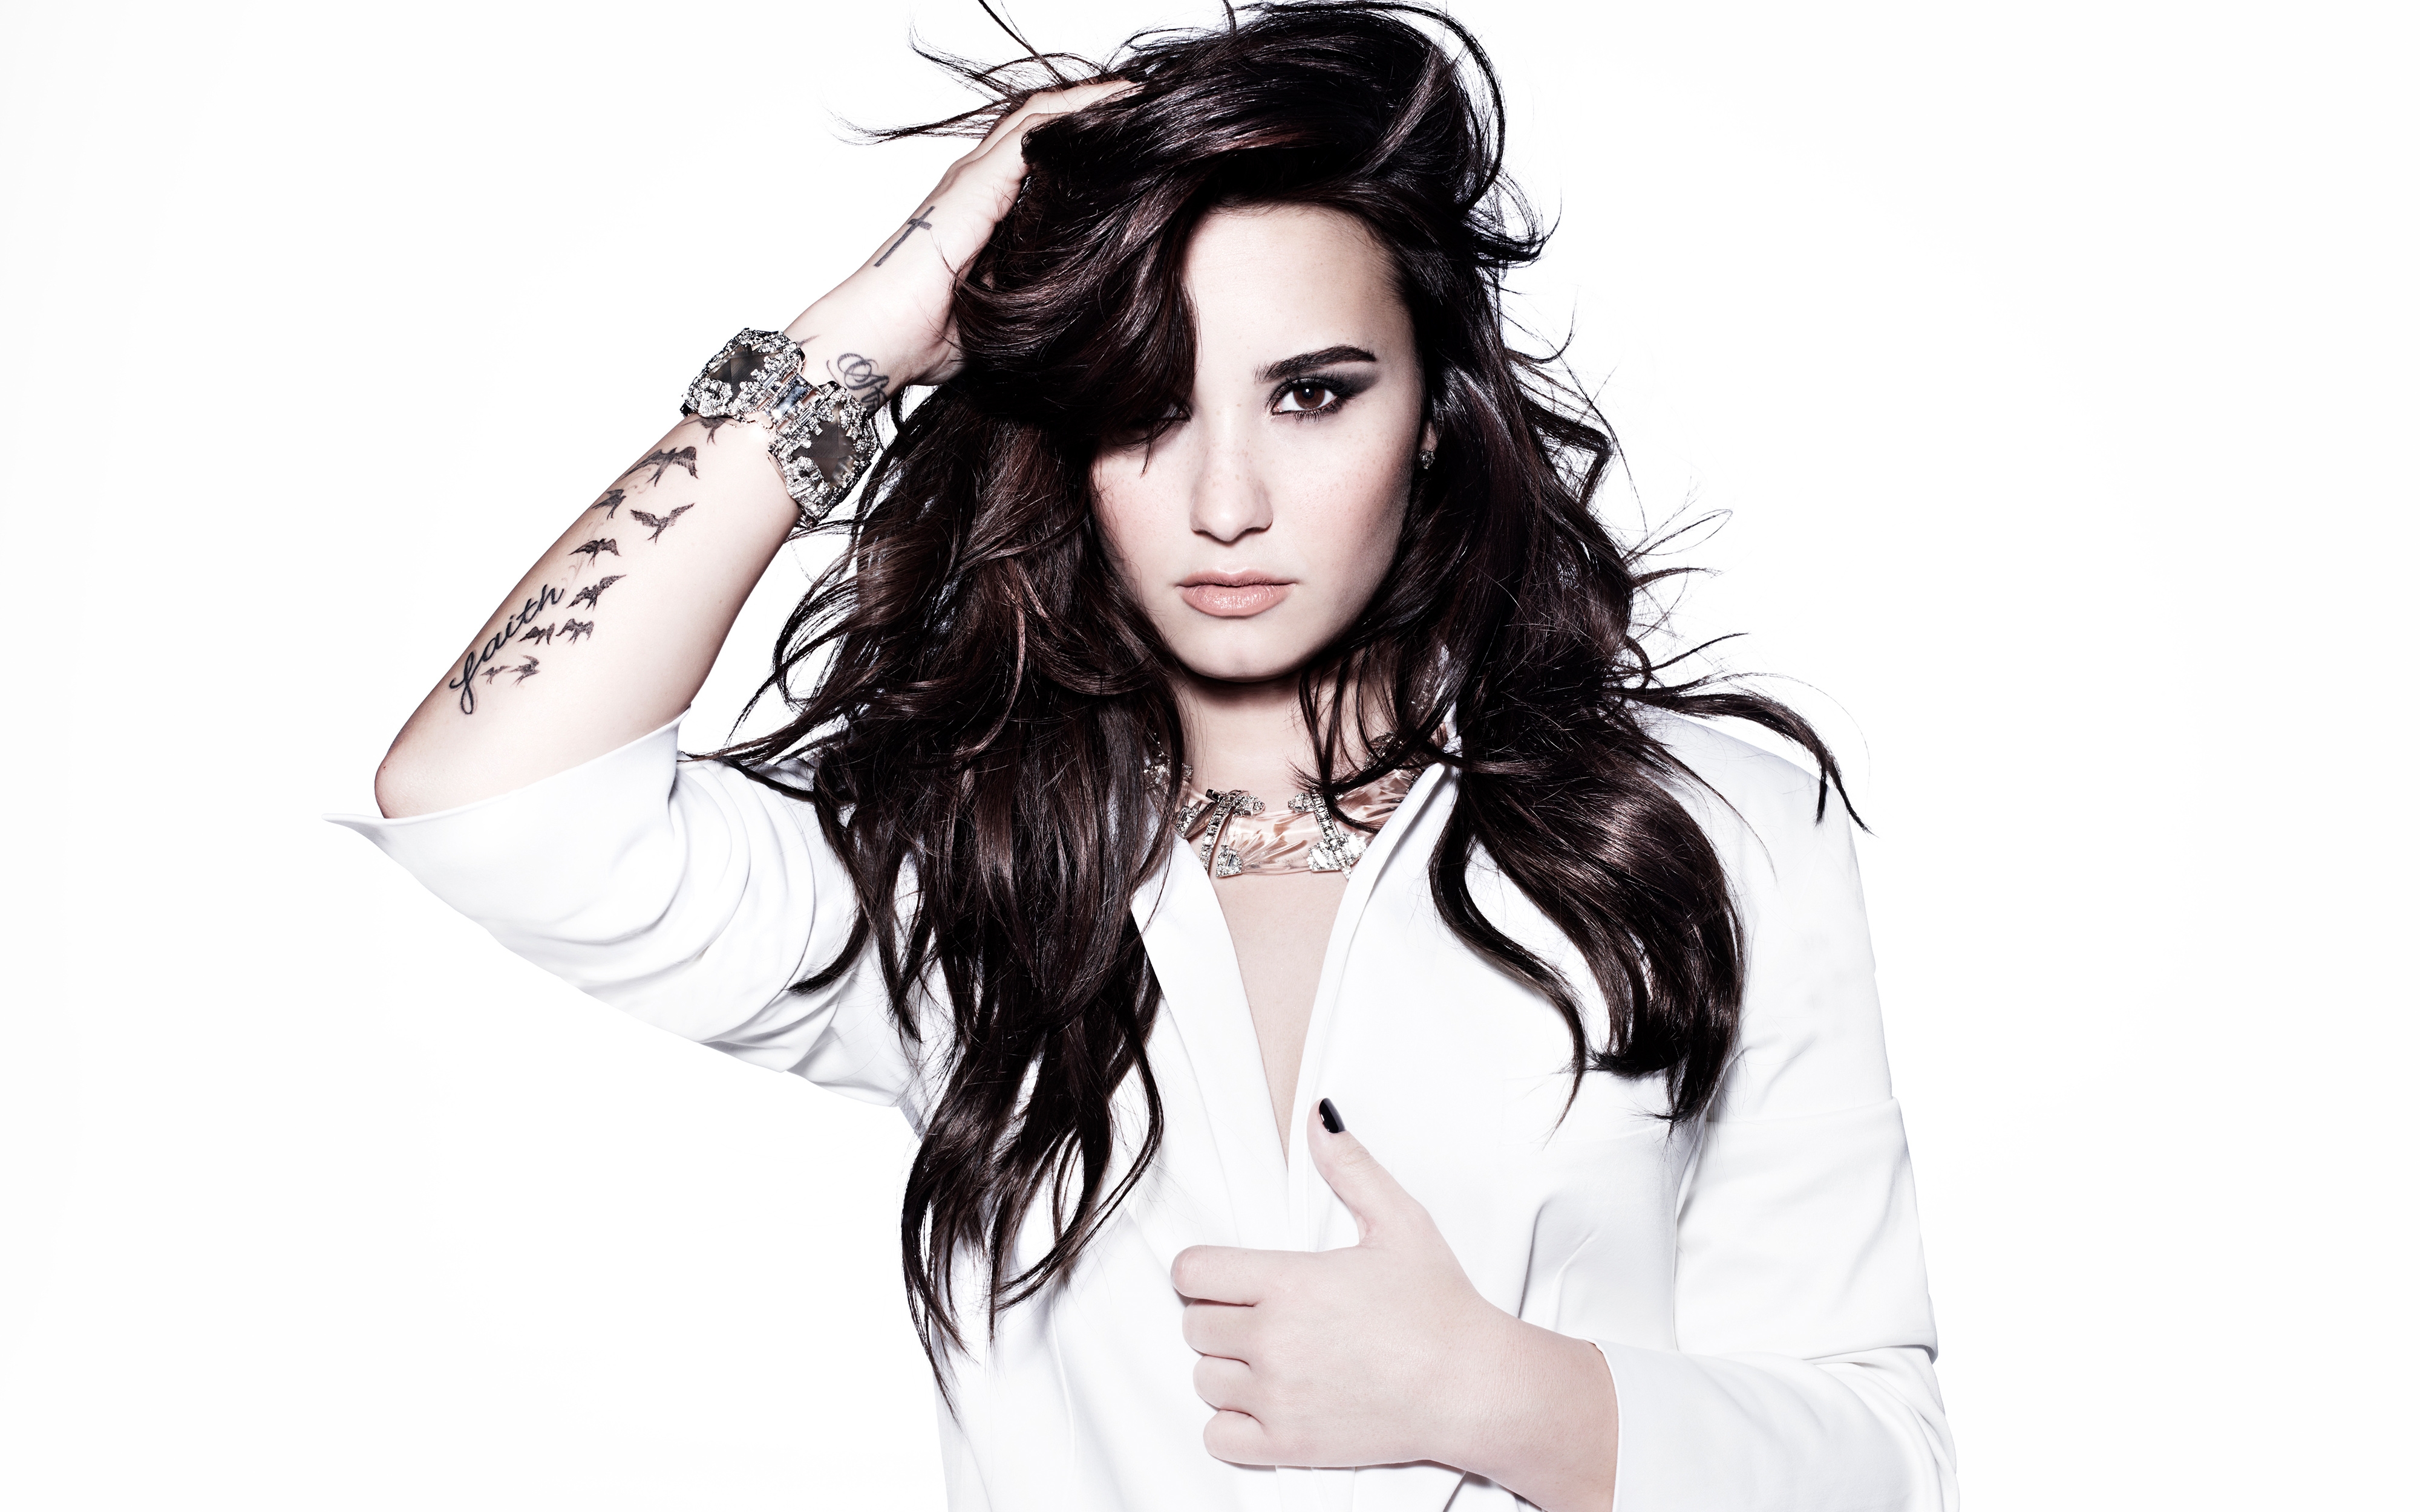 Wallpapers Demi Lovato brunette singer on the desktop